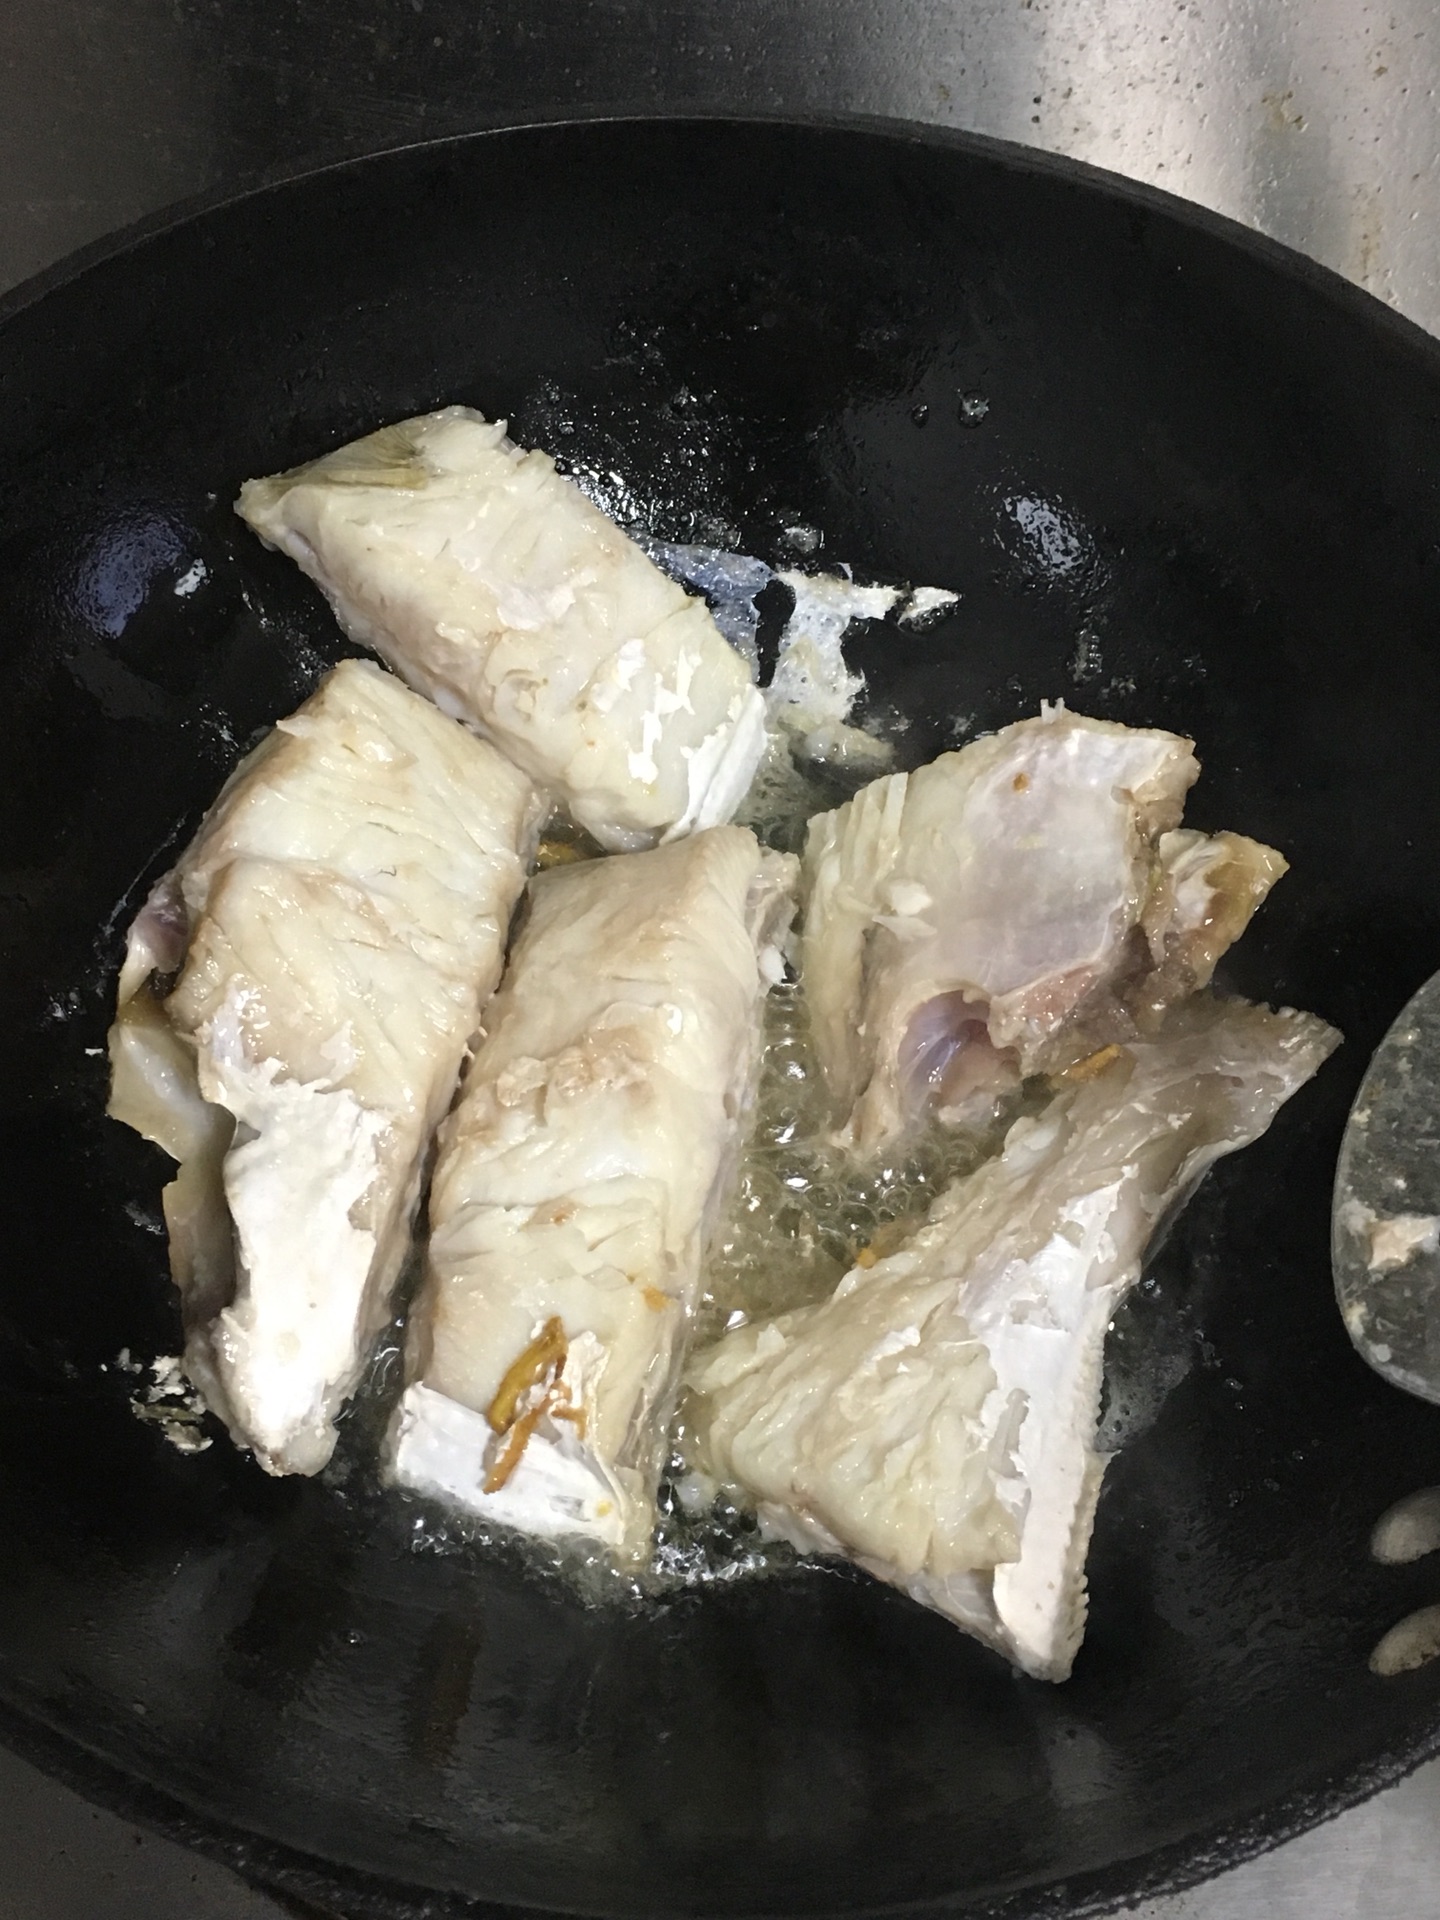 水煮鱼怎么做_水煮鱼的做法_豆果美食